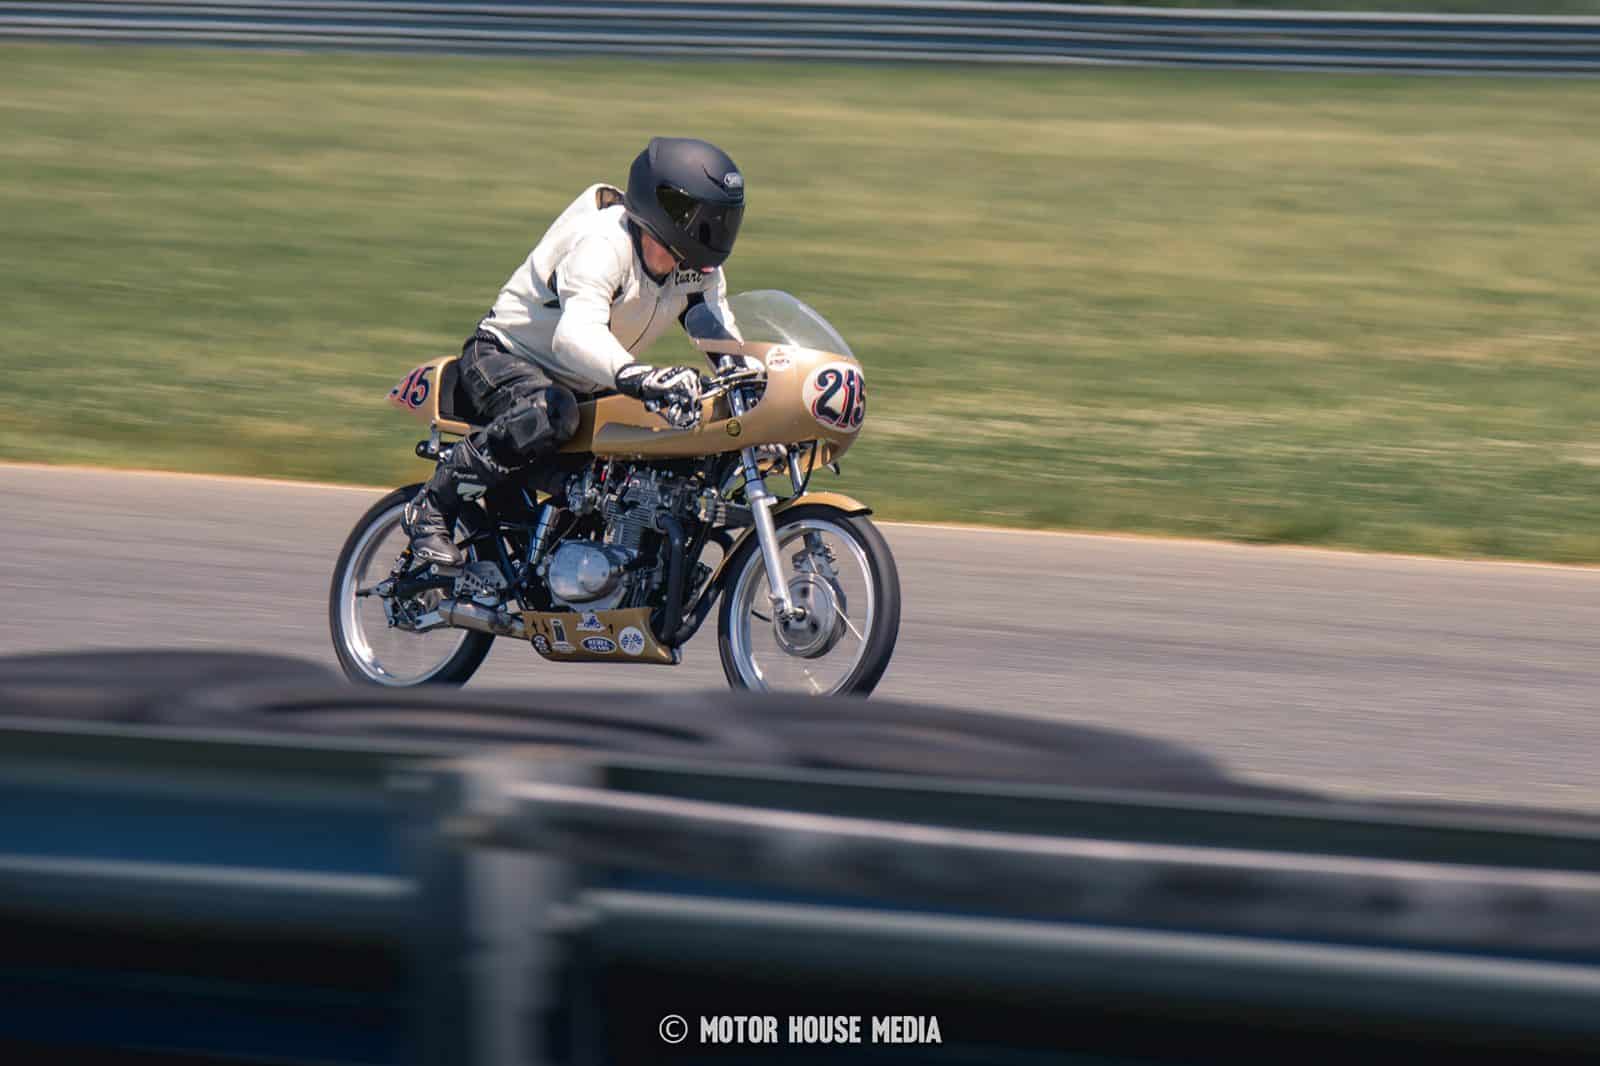 AHRMA Vintage Motorcycle racing